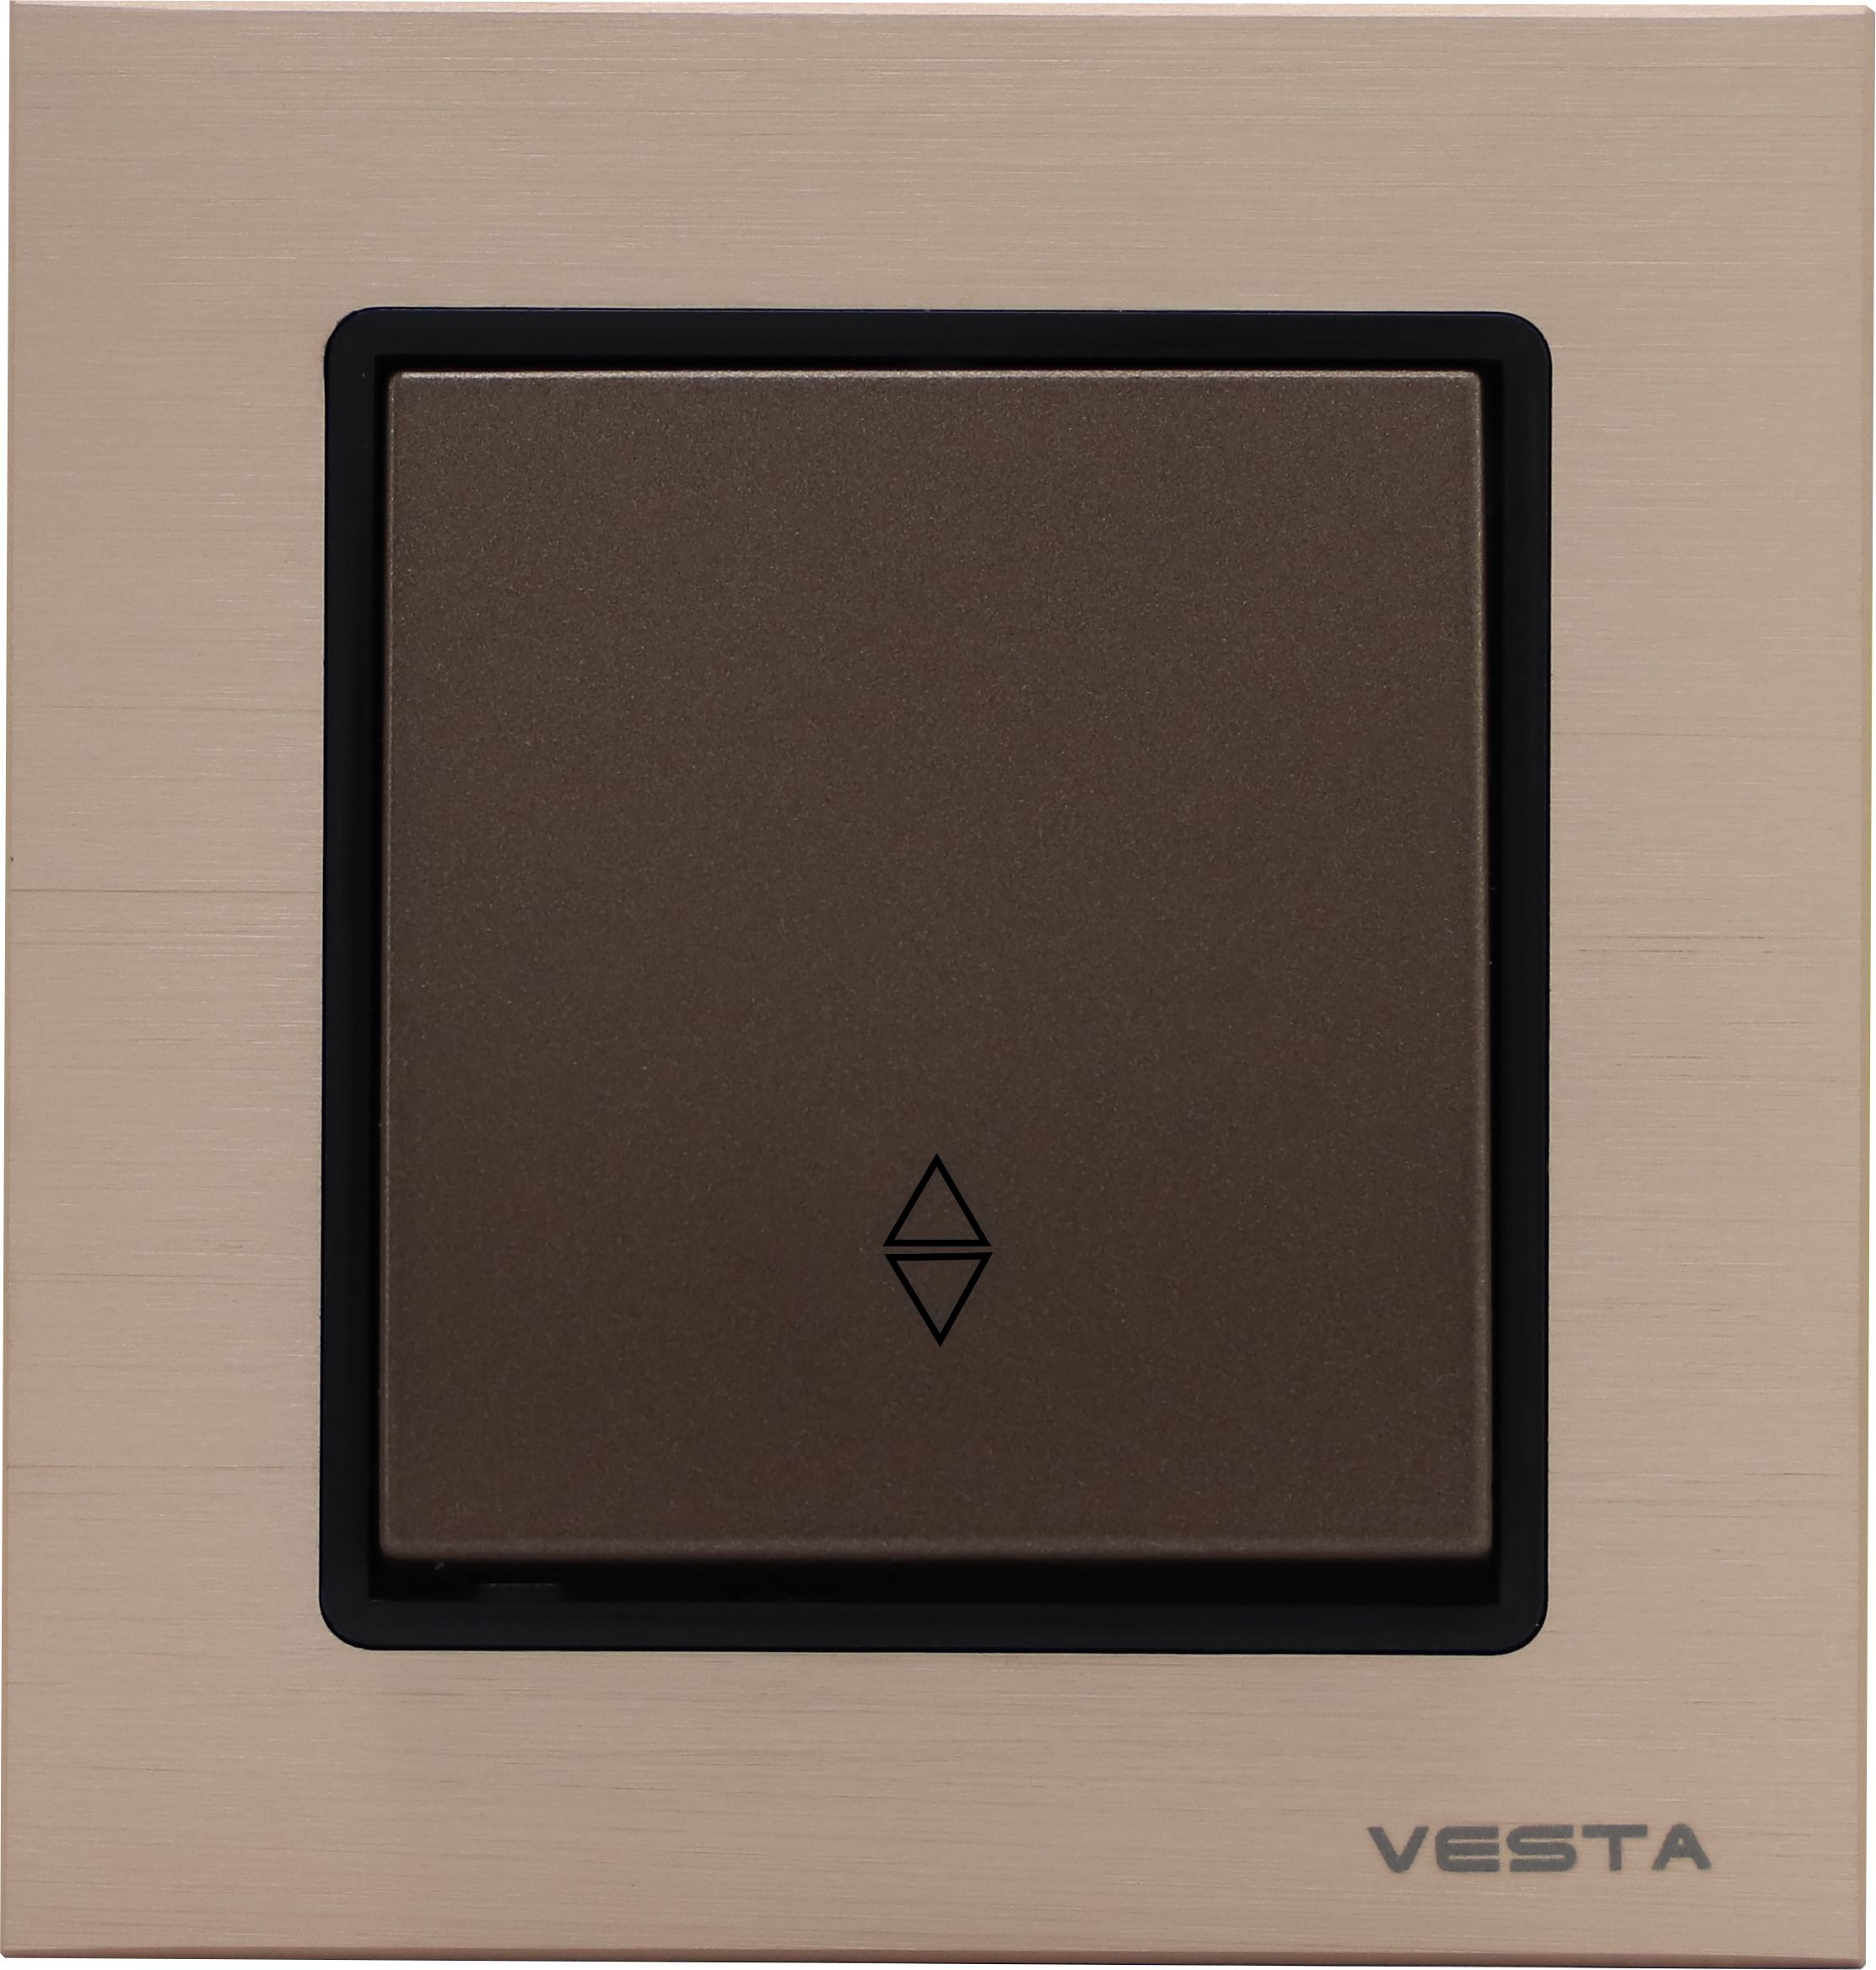 Выключатель Vesta-Electric Exclusive Champagne Metallic реверсивный